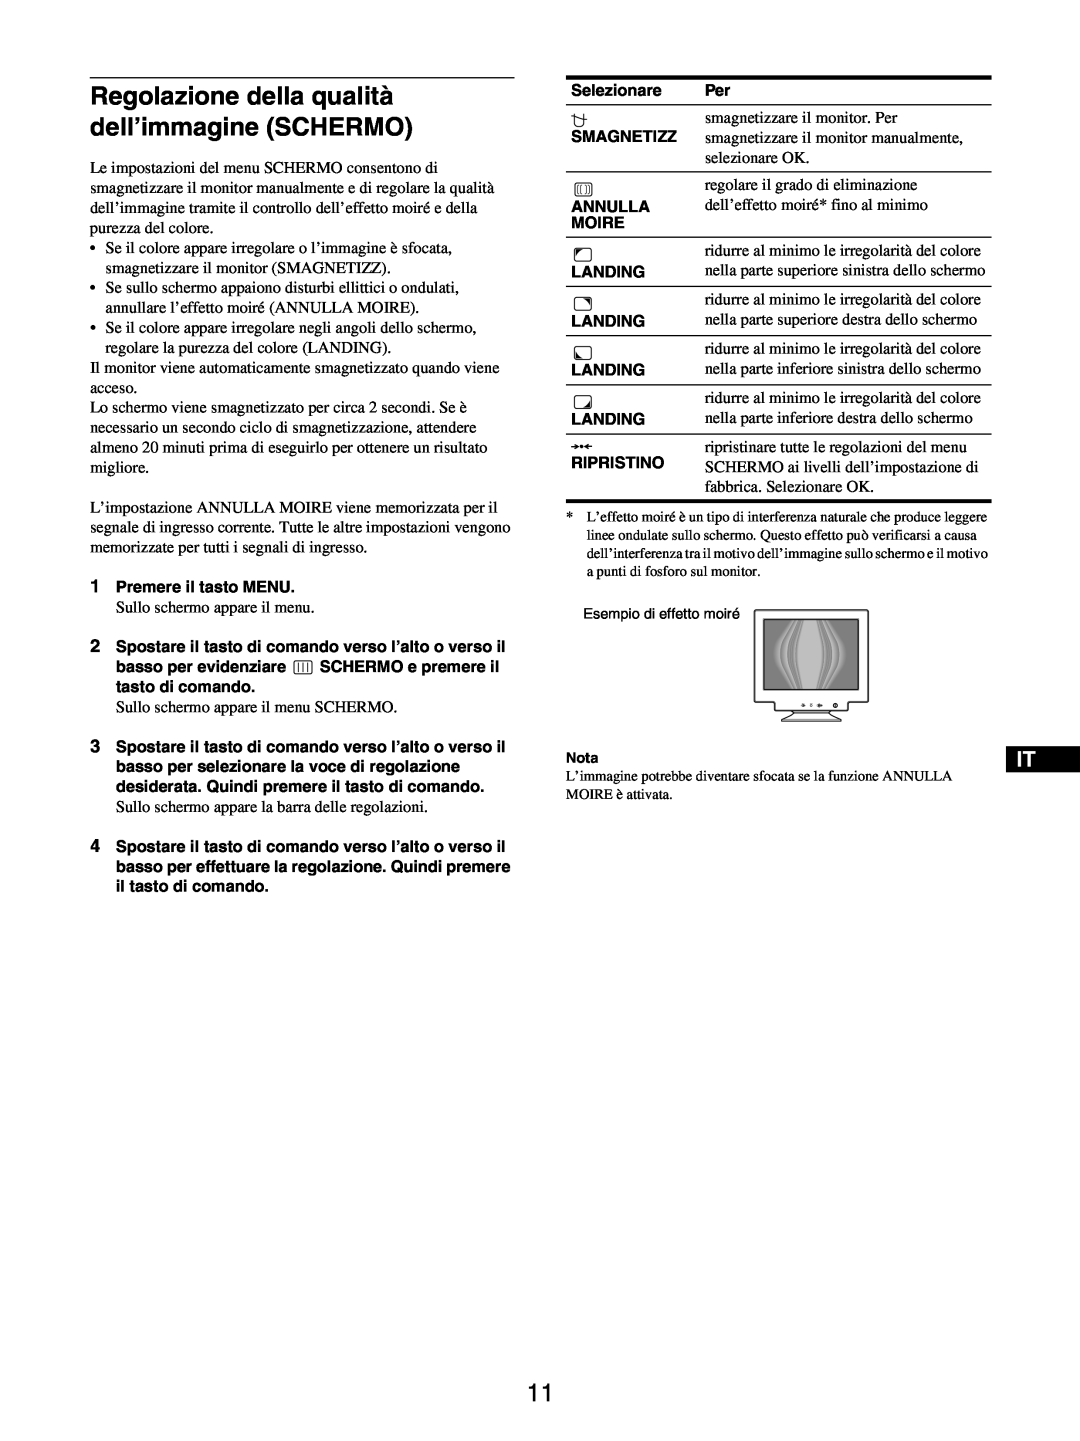 Sony GDM-5510 operating instructions Regolazione della qualità dell’immagine SCHERMO, Esempio di effetto moiré 